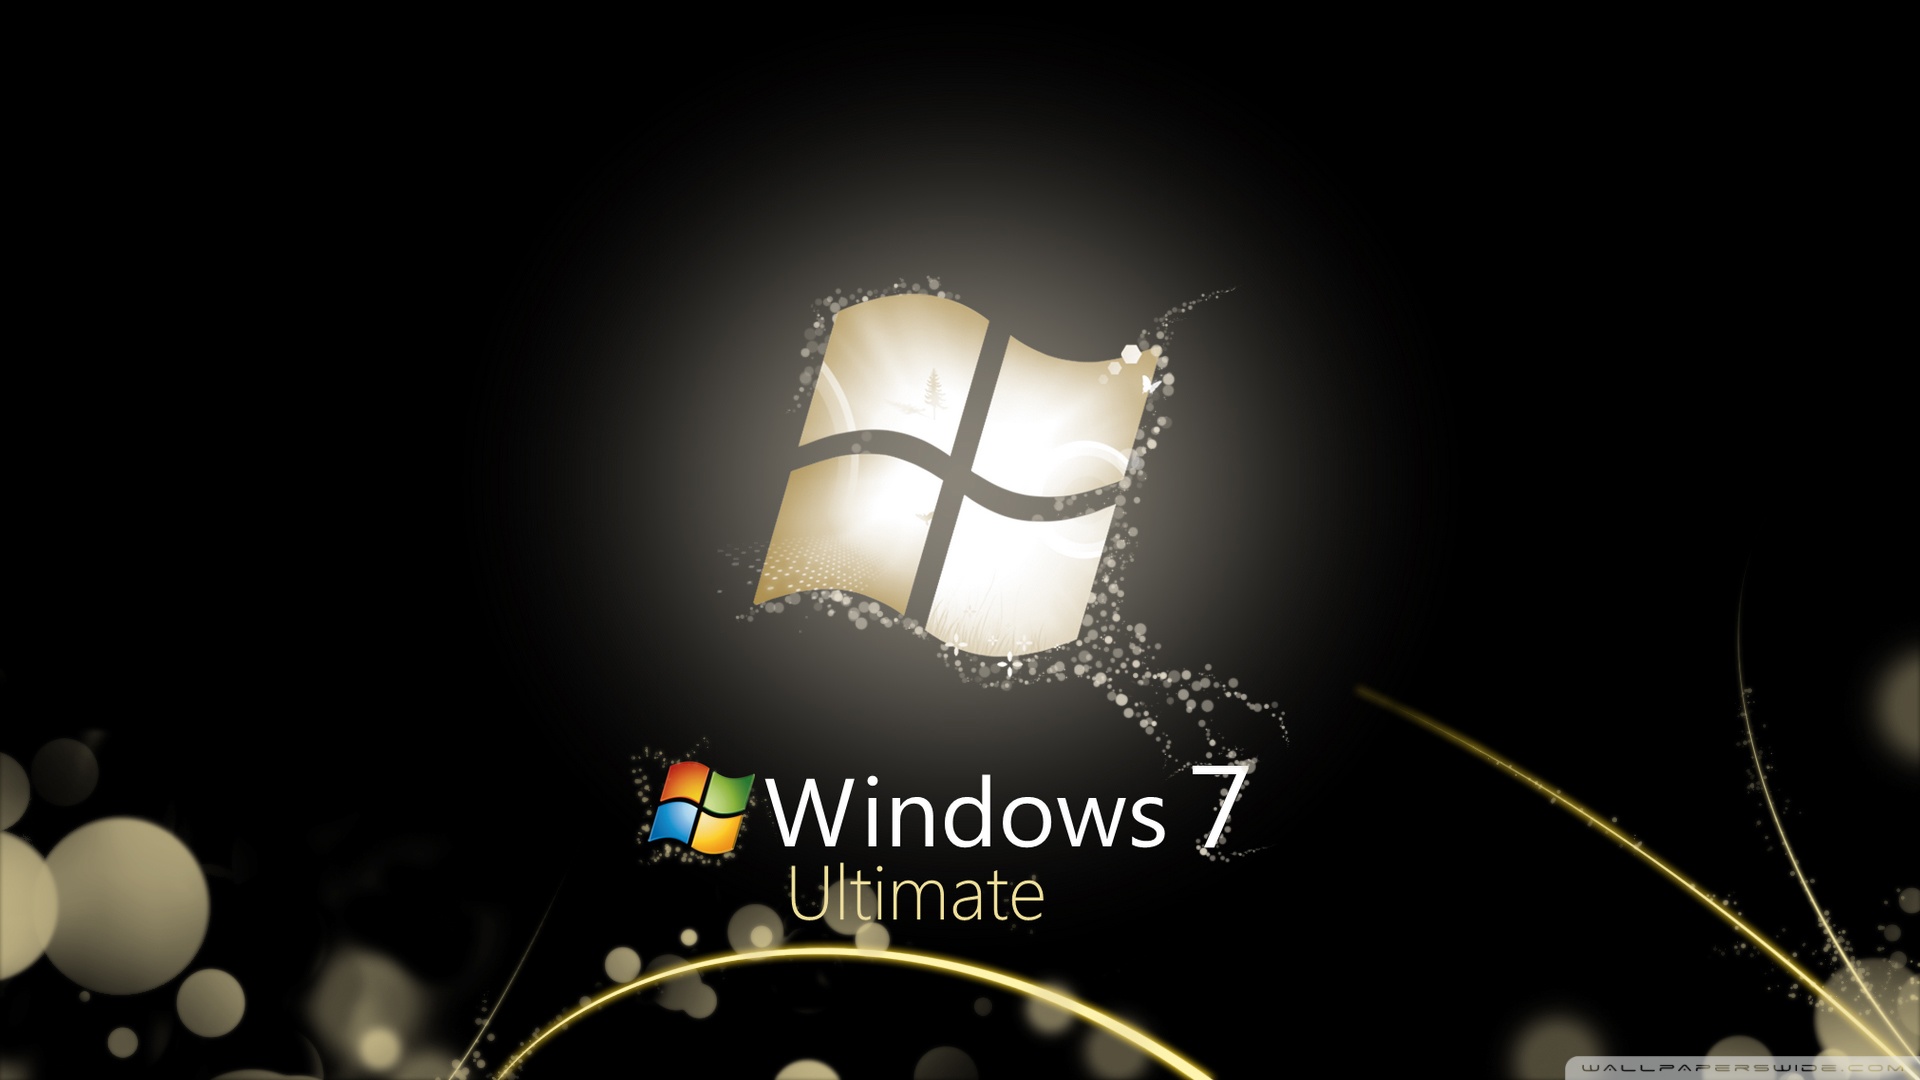 Hình nền Windows 7 là điều mà bạn không thể bỏ qua để tạo cho máy tính của mình một diện mạo mới lạ, thú vị hơn bao giờ hết. Nếu bạn đang tìm kiếm một hình nền độc đáo cho máy tính của mình, hãy truy cập để tải ngay những hình nền Windows 7 đẹp nhất!